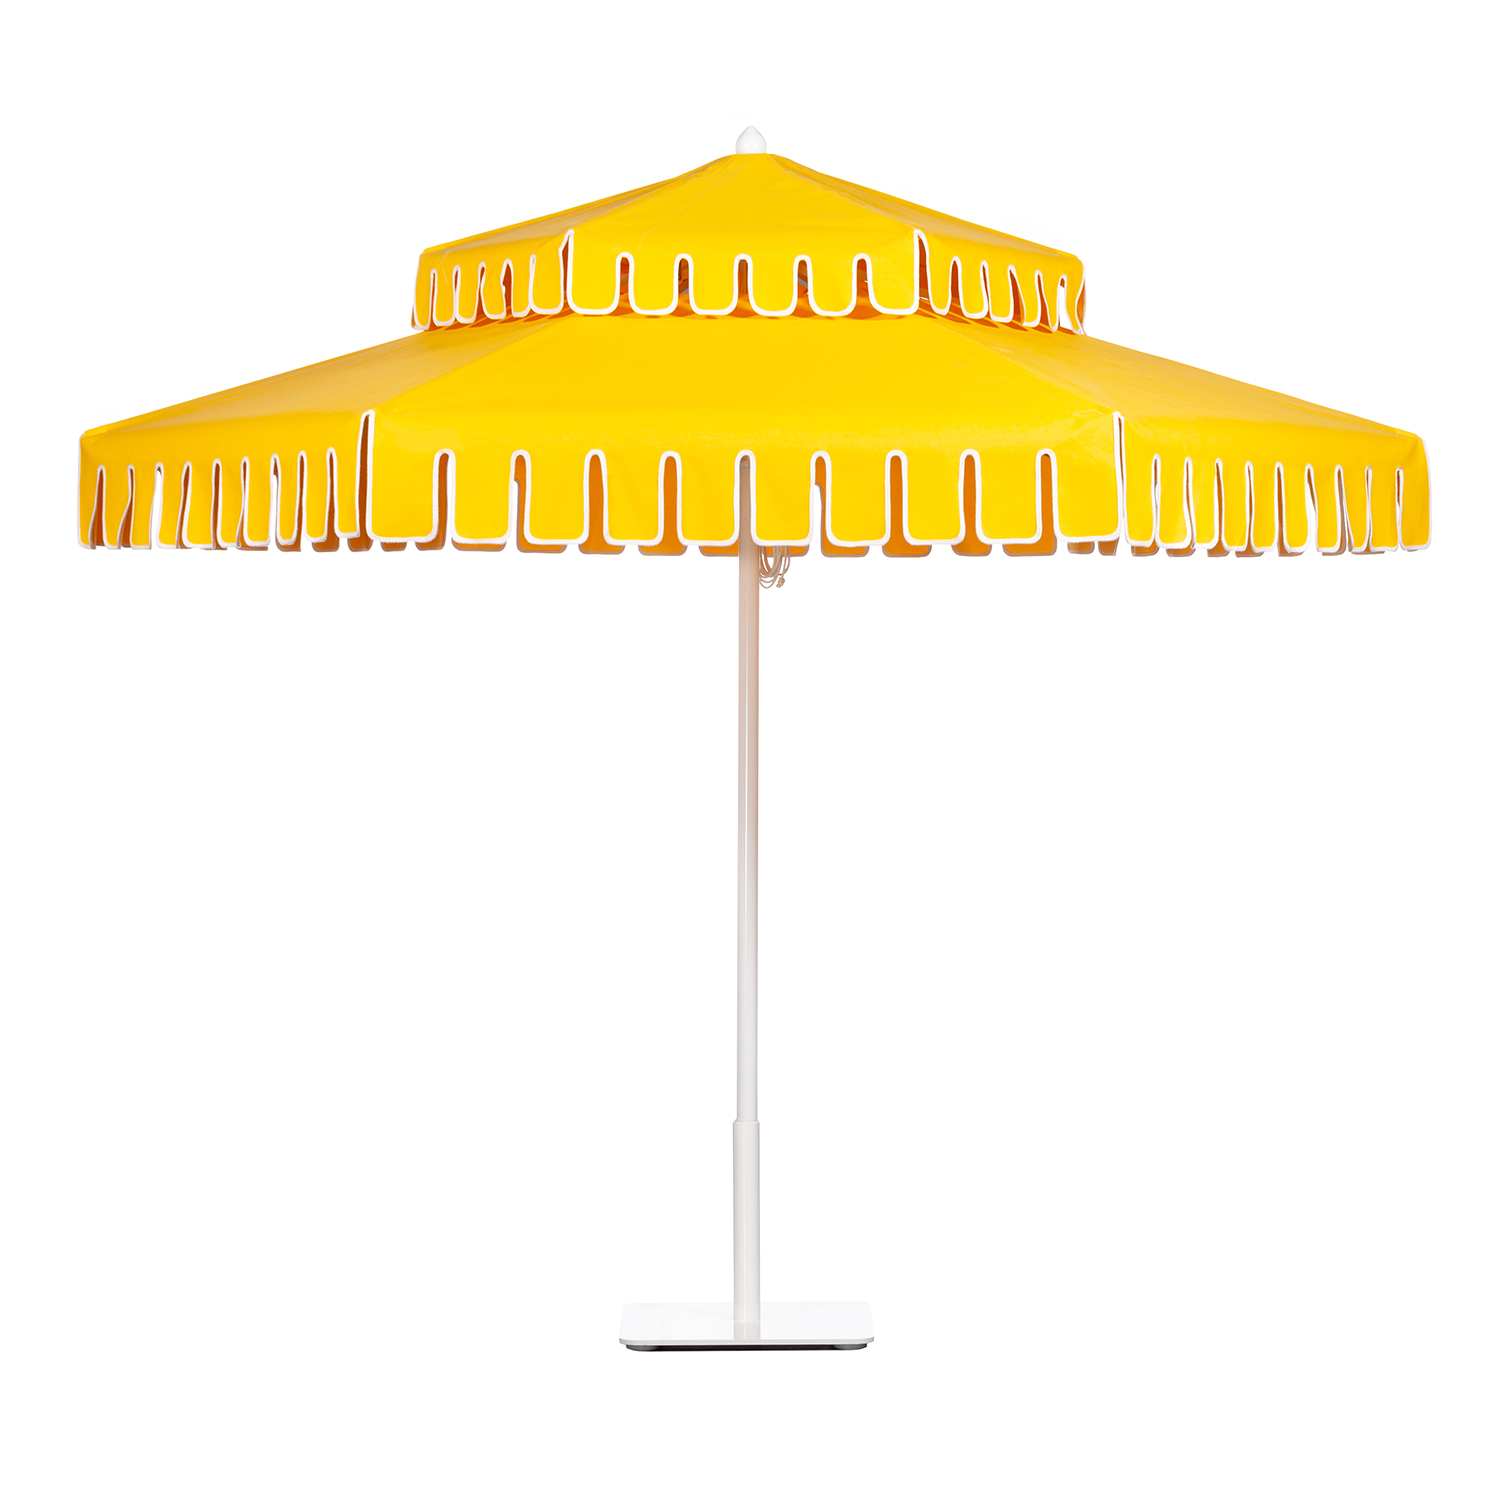 Image of Double Decker aluminum umbrella